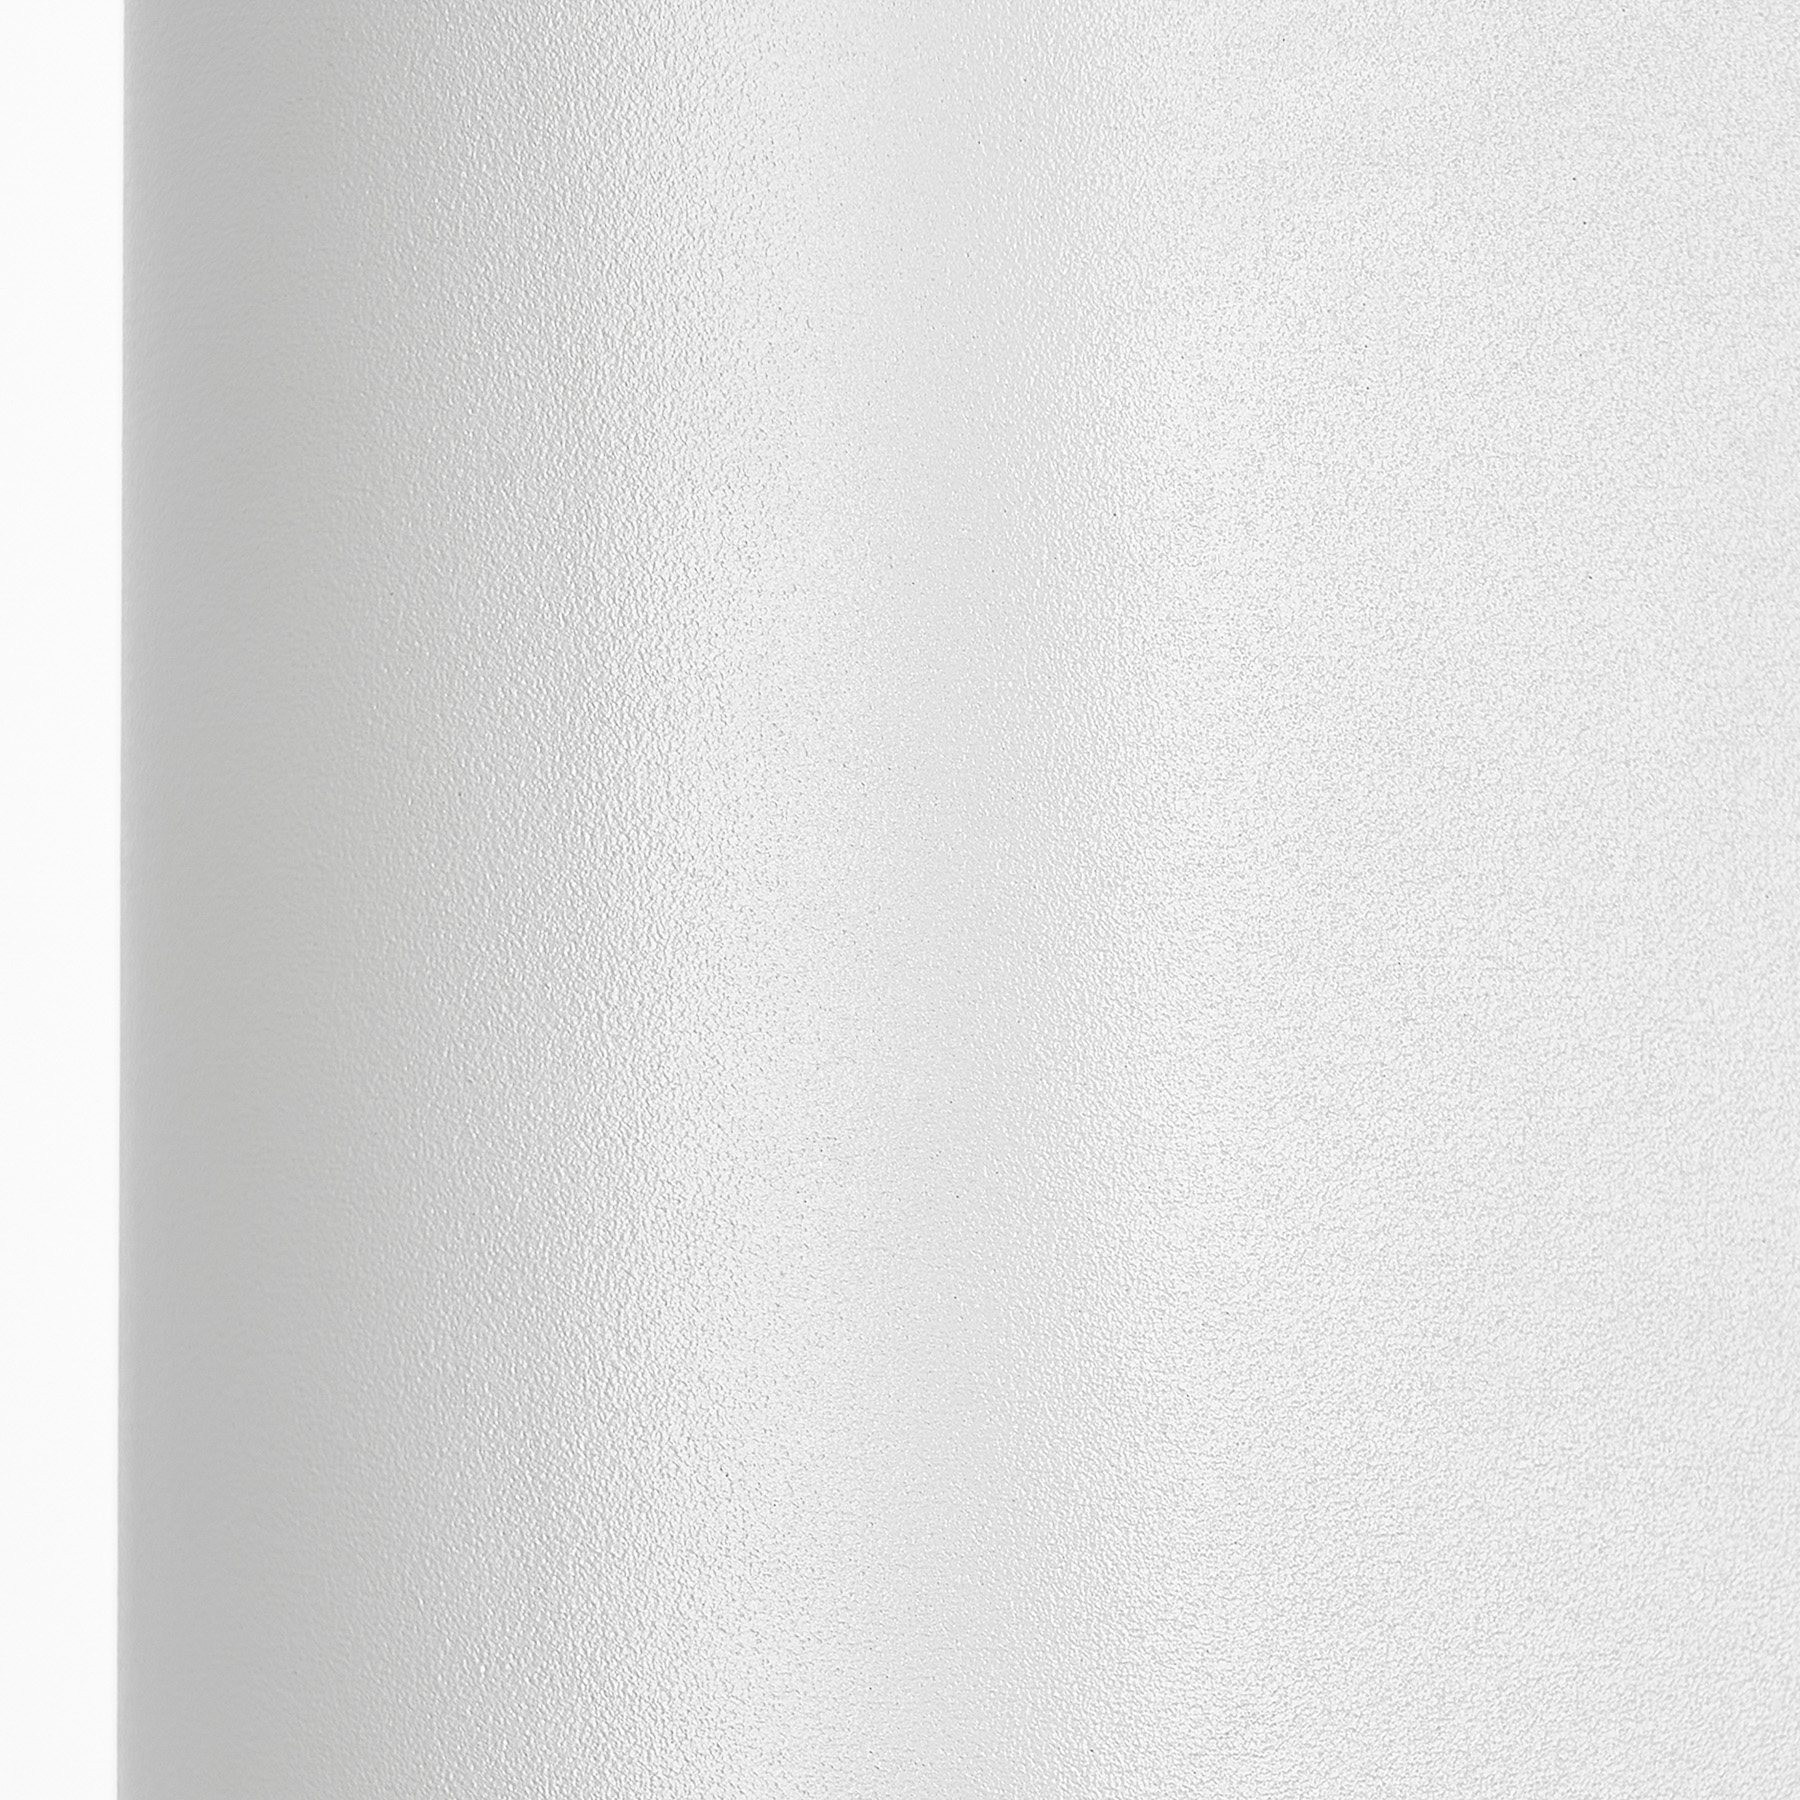 Prios ulkoseinävalaisin Tetje, valkoinen, pyöreä, 16 cm, 4 kpl, sarja